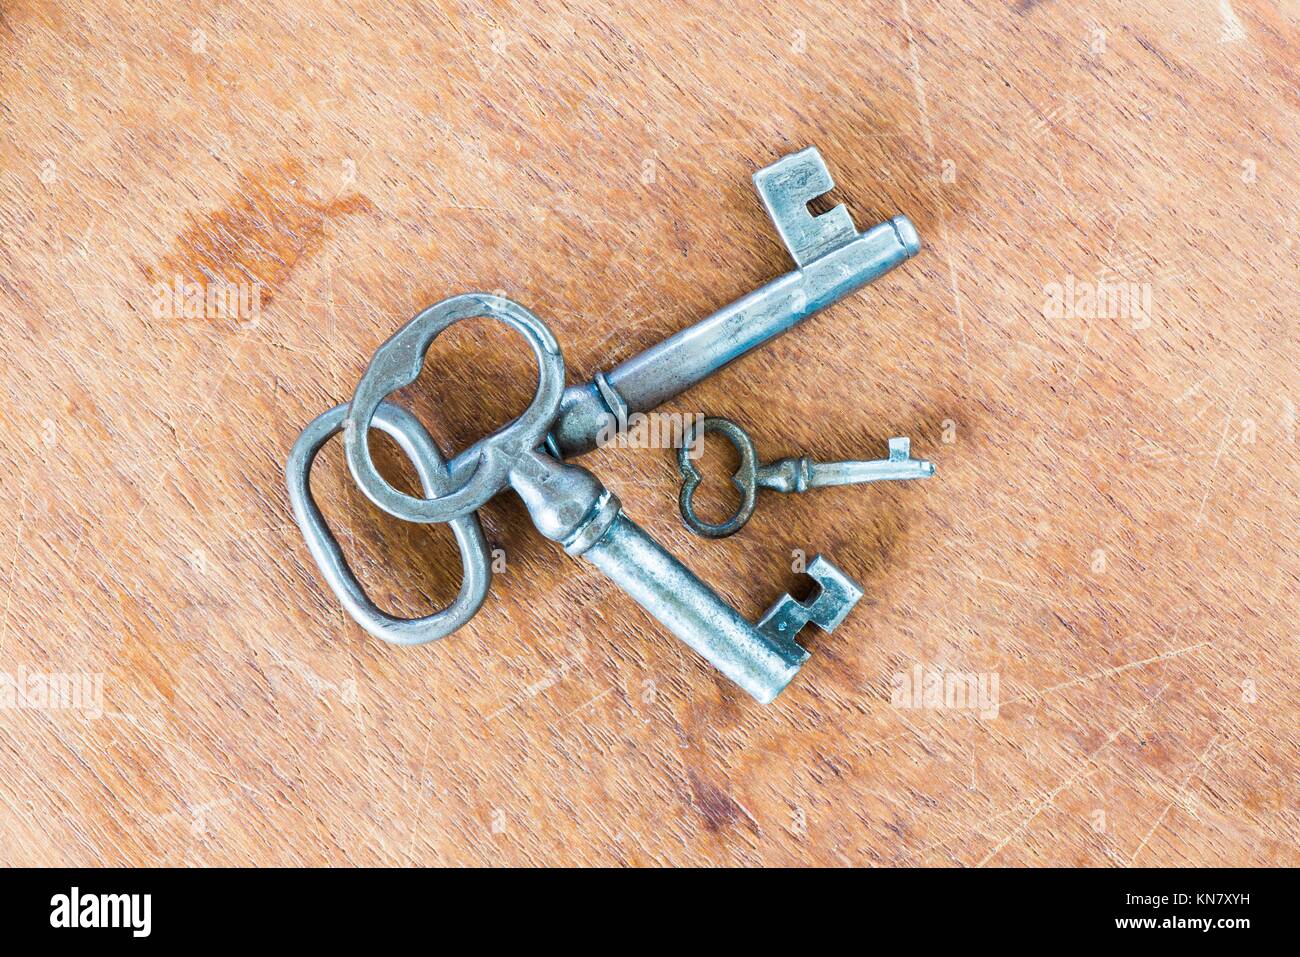 Verschiedene Schlüssel in alten Vintage Retro Stil auf Holz- Oberfläche.  Satz von drei von klein bis groß. Symbol für Sicherheit, Vielfalt und  Differenz Stockfotografie - Alamy